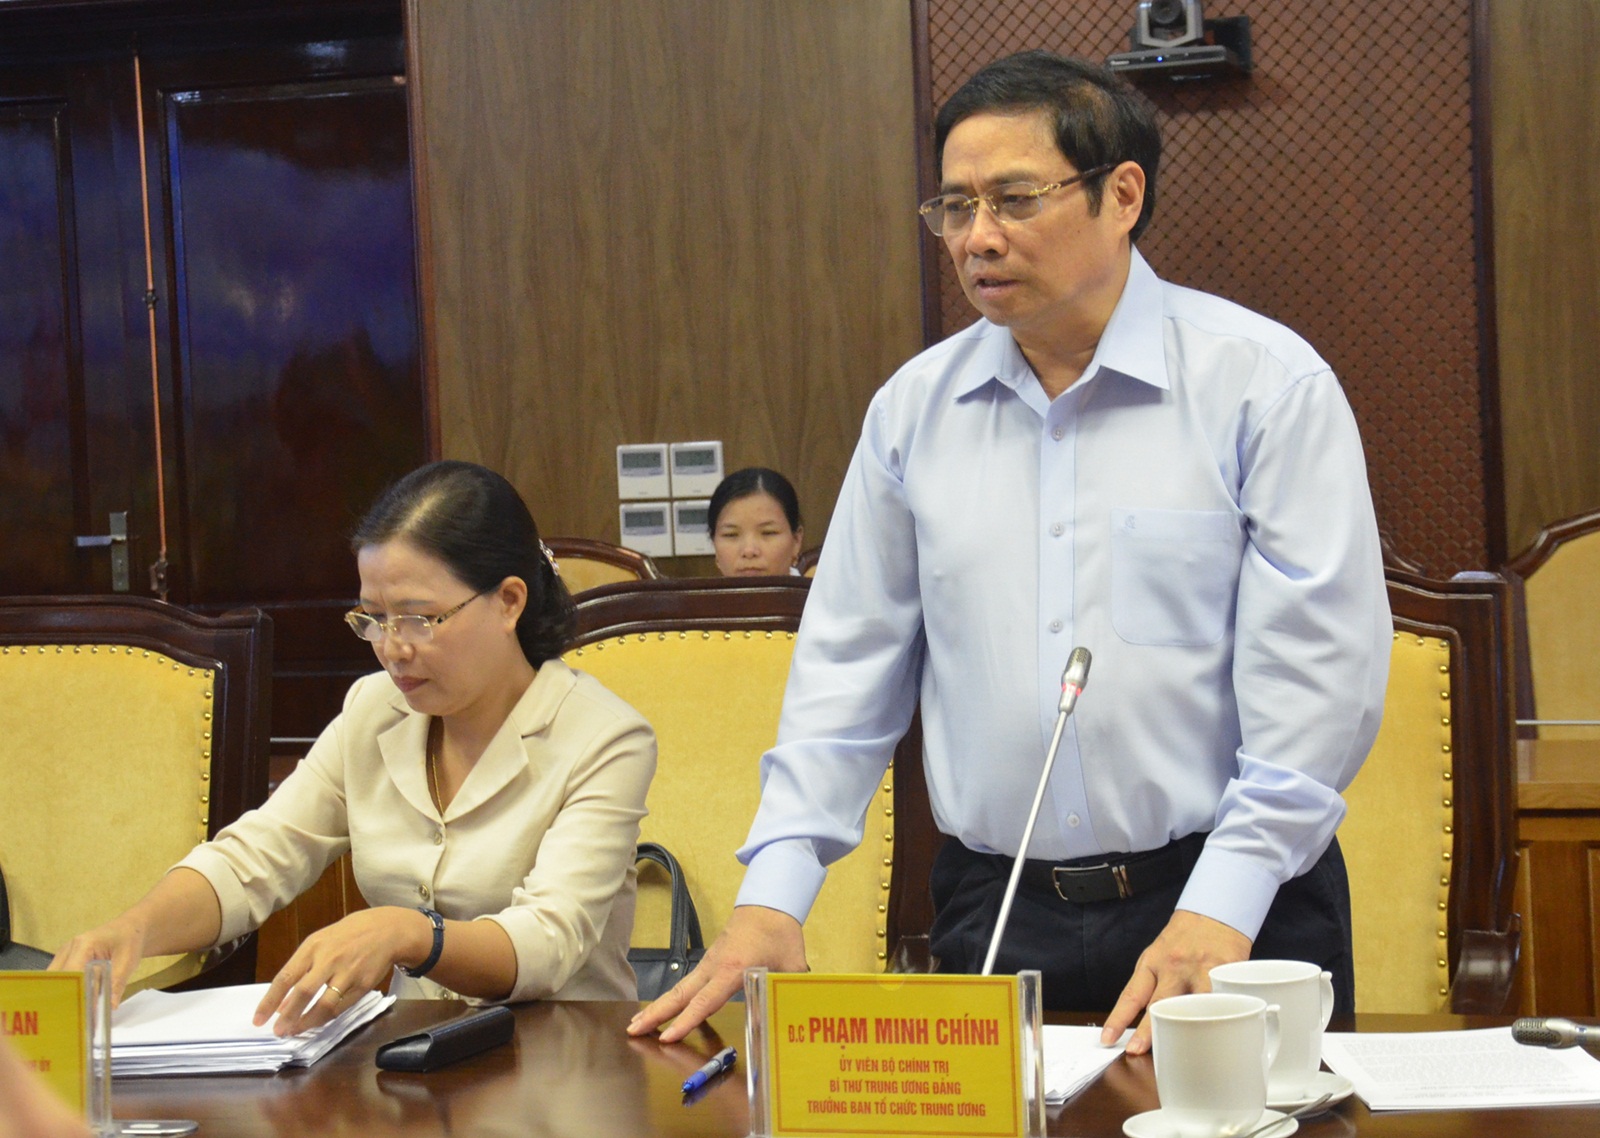 Đồng chí Phạm Minh Chính, Uỷ viên Bộ Chính trị, Bí thư Trung ương Đảng, Trưởng Ban Tổ chức Trung ương, phát biểu tại buổi làm việc.